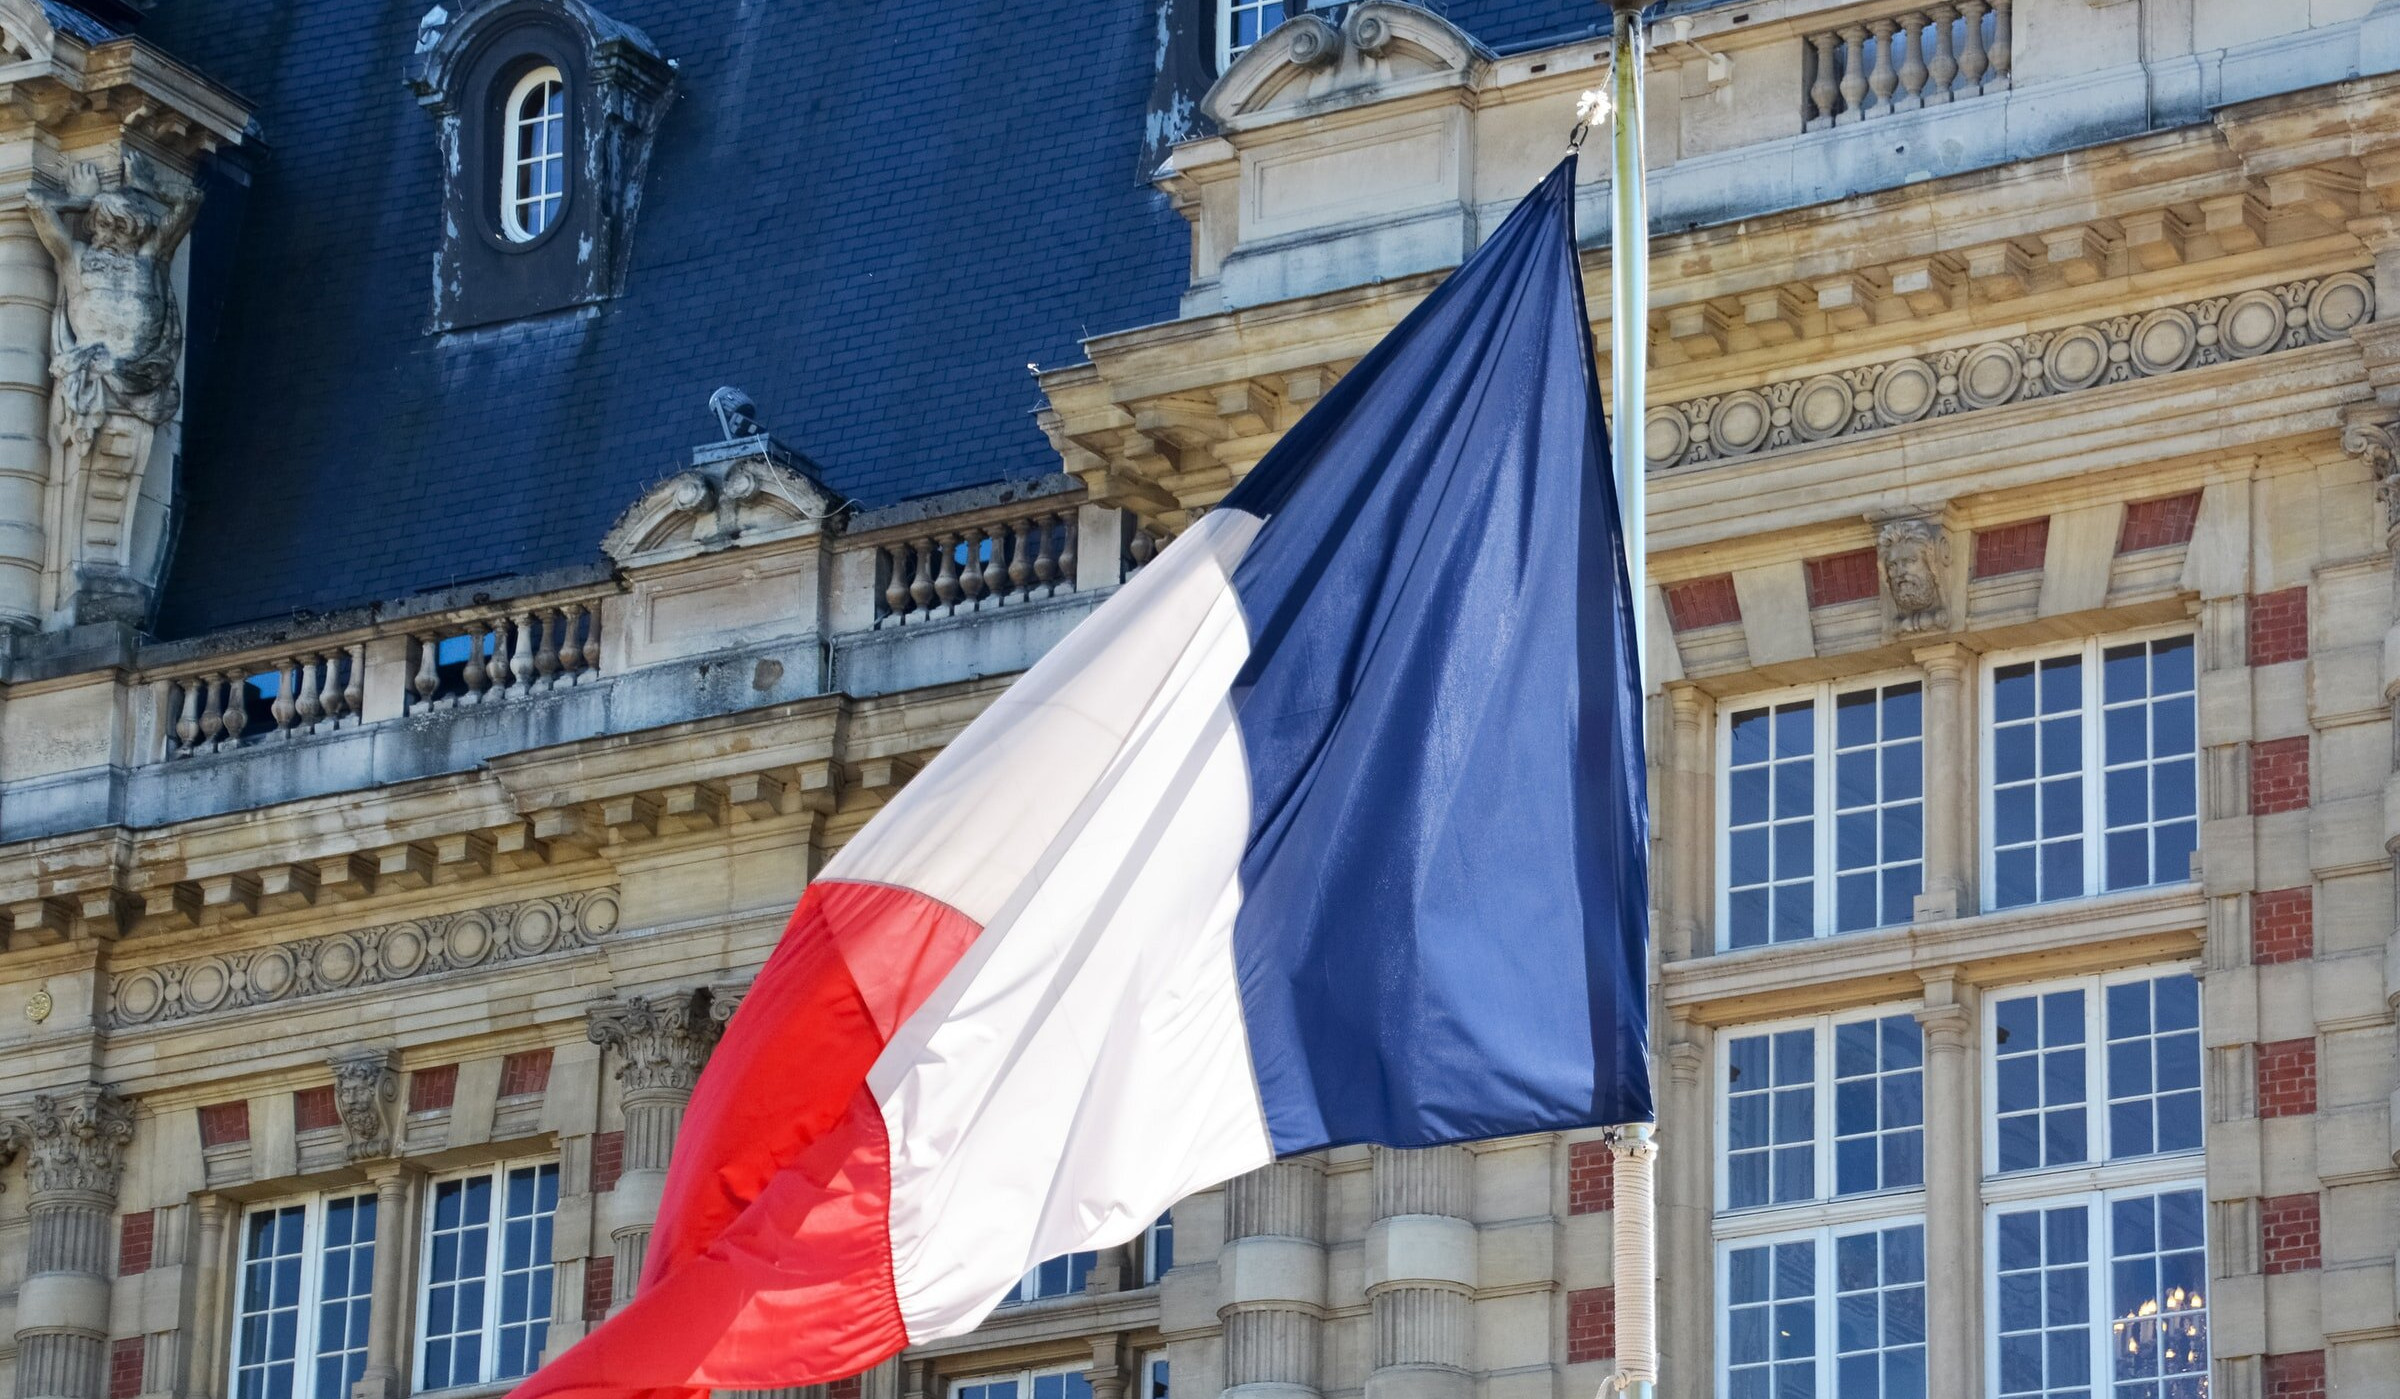 Խորհրդարանի բանաձևերը չեն արտացոլում Փարիզի պաշտոնական գիծը․ Ֆրանսիայի ԱԳՆ